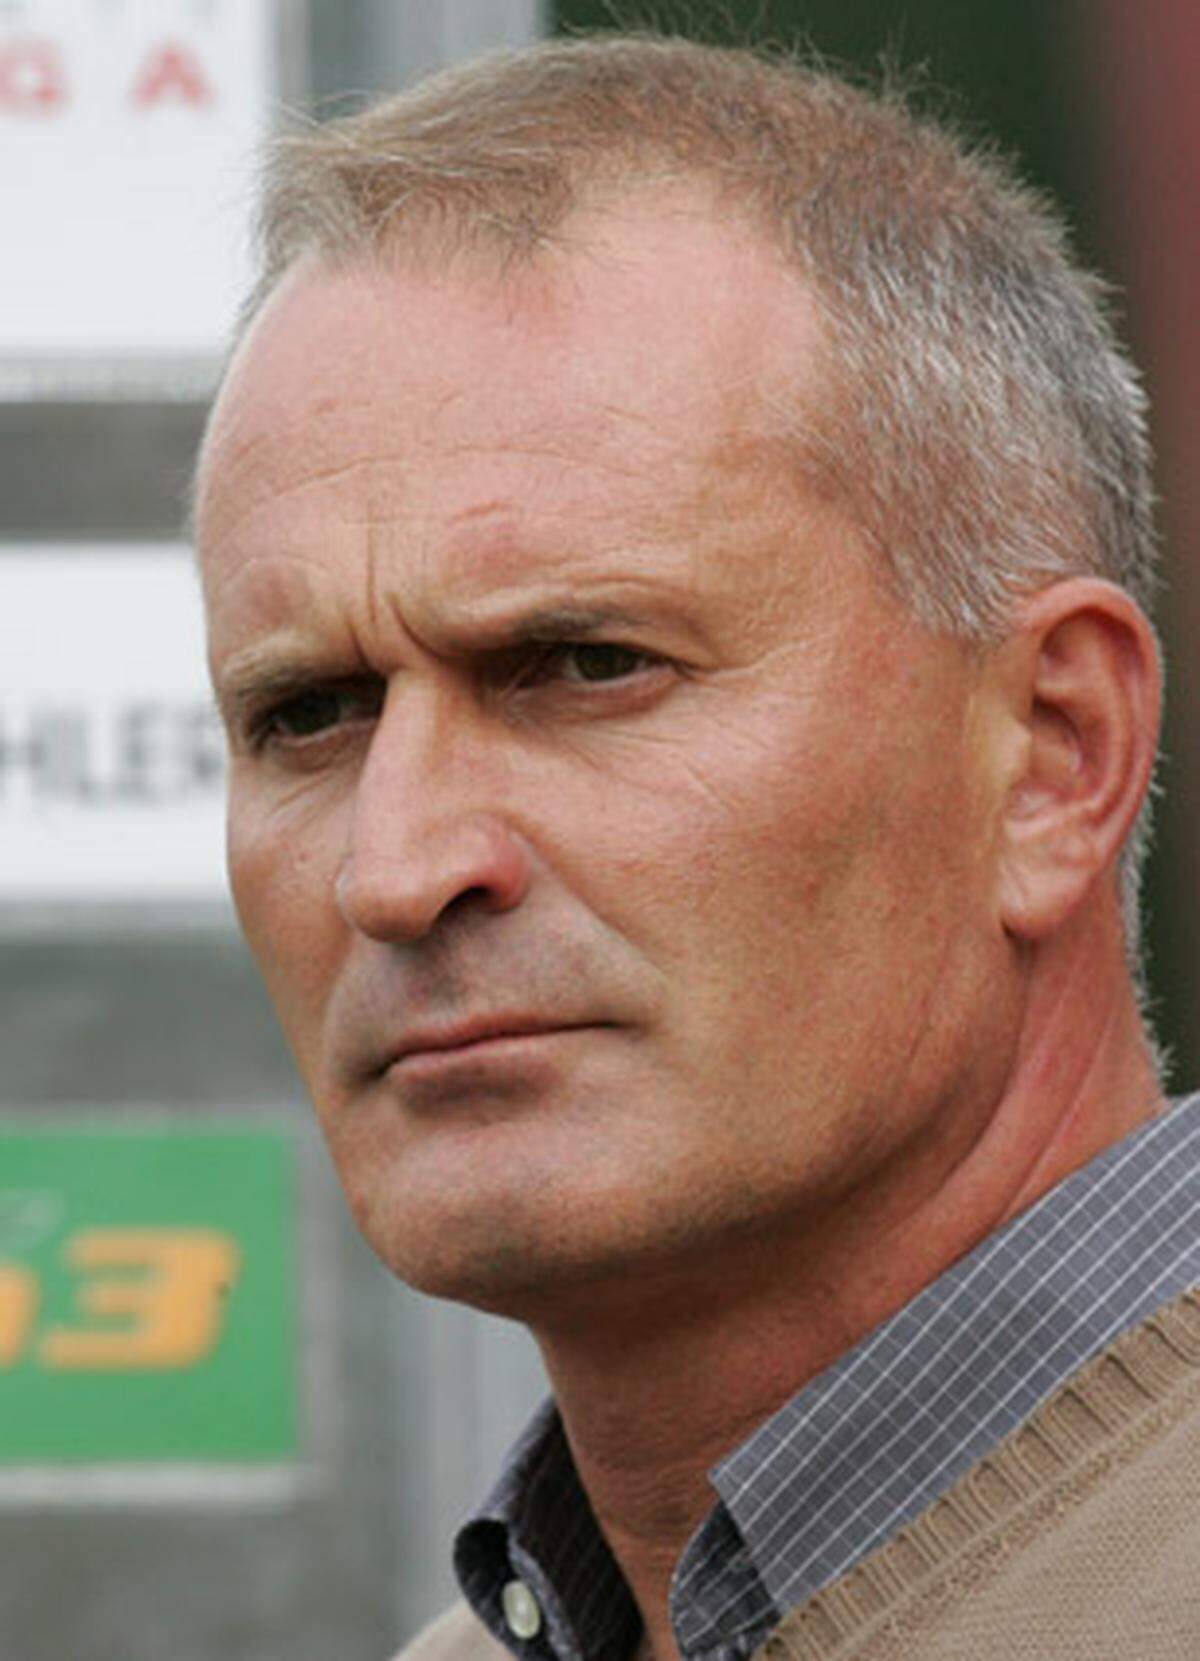 Auch der heutige Trainer von Dunajska Streda kann auf eine sehr überschaubare Teamkarriere zurückblicken. In der ersten Amtszeit von Didi Constantini debütierte Garger 1991 beim 0:2 gegen Jugoslawien. Unter Nachfolger Ernst Happel hatte der Salzburger kein Leiberl mehr.